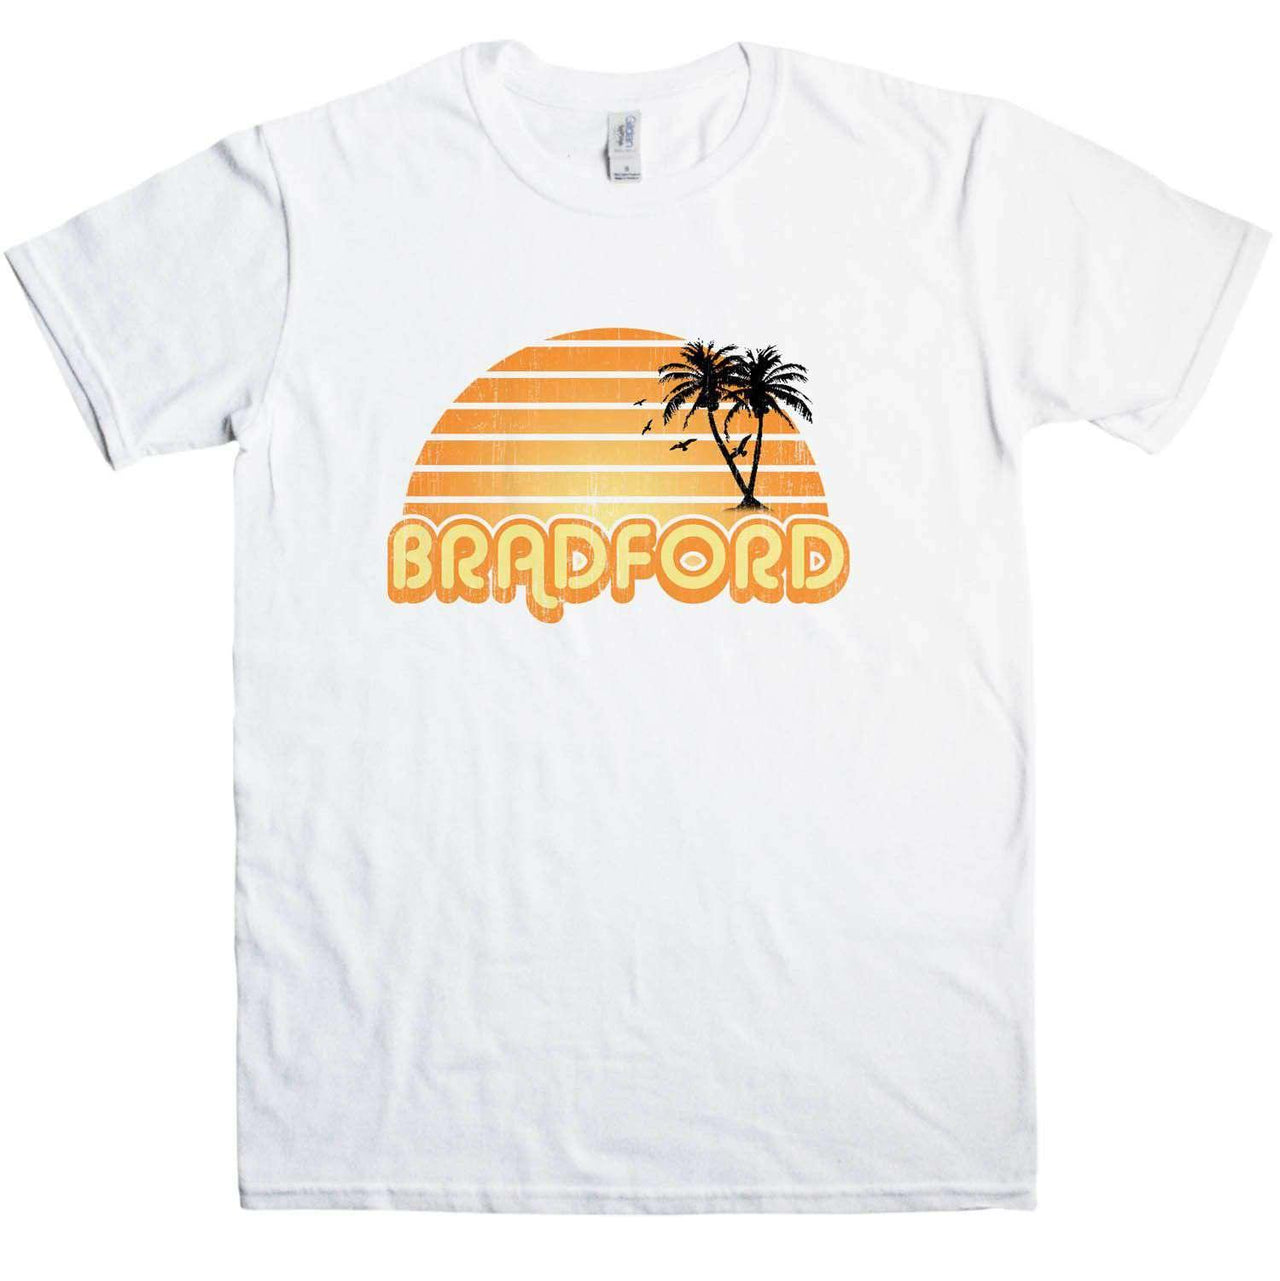 City Sunset Bradford Graphic T-Shirt For Men 8Ball